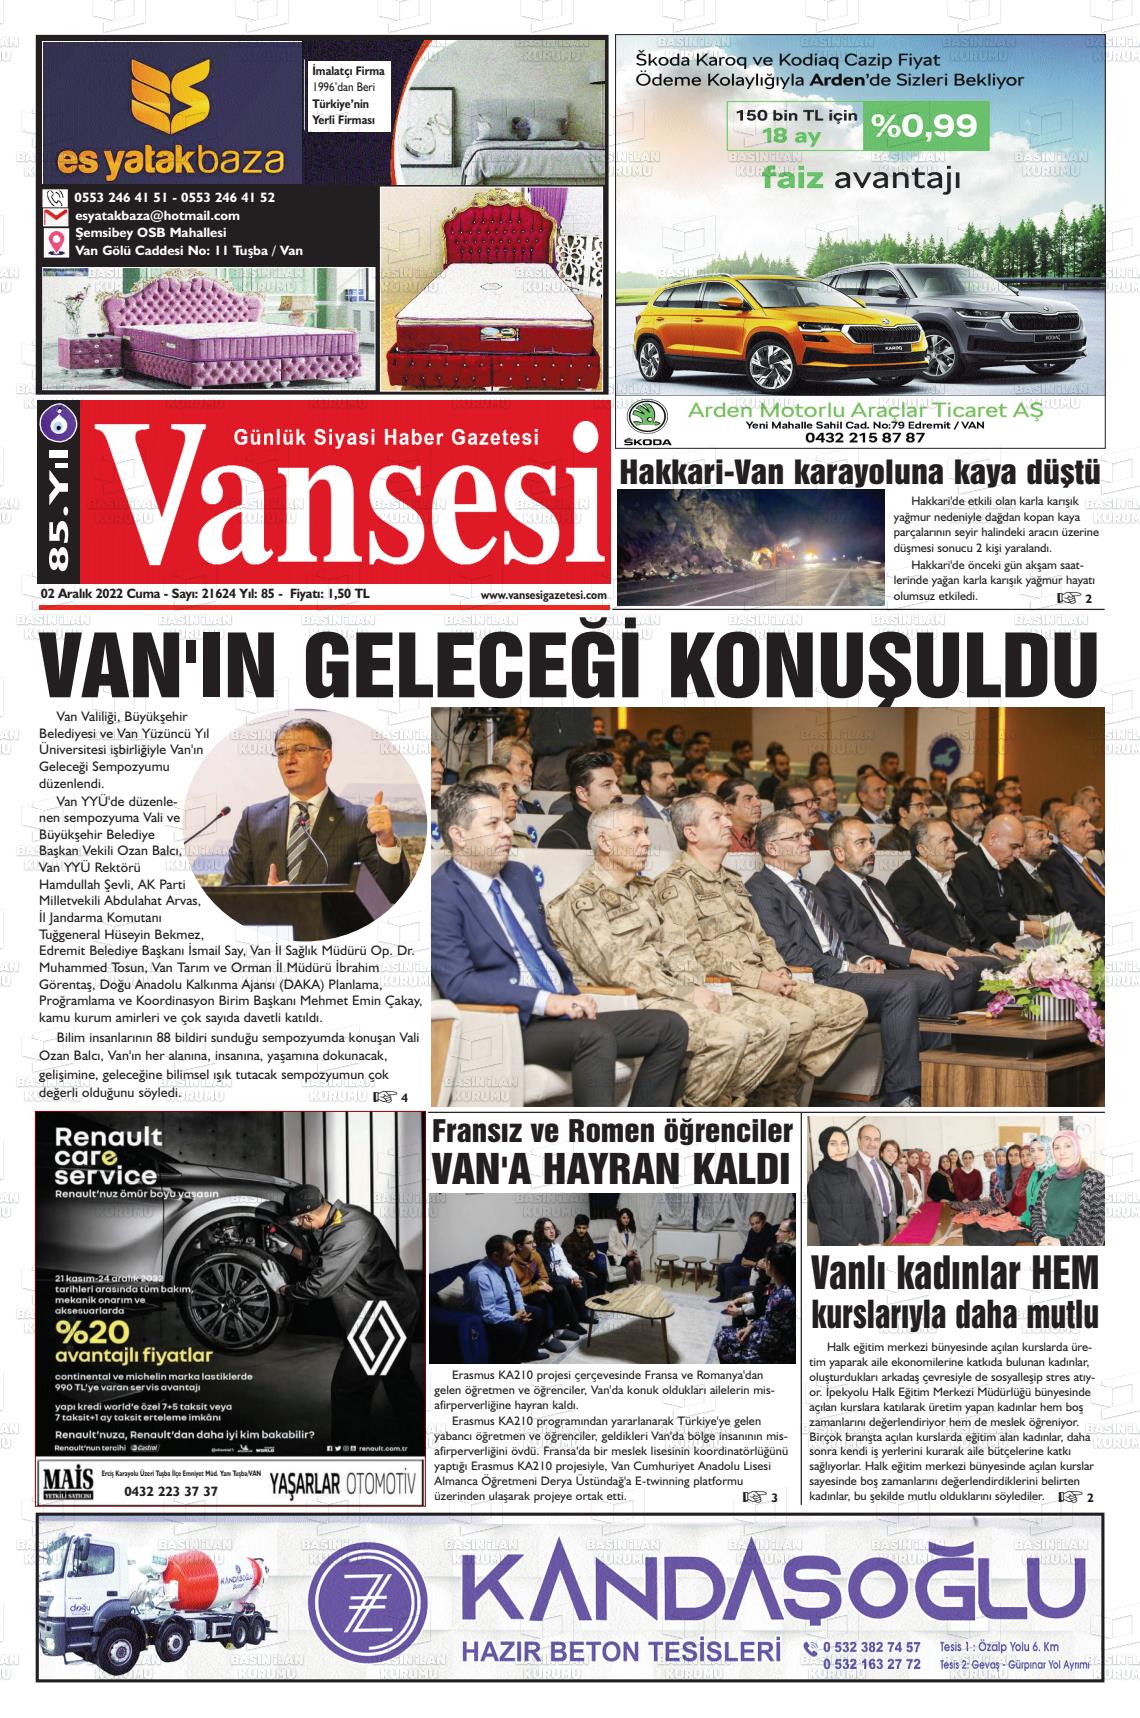 02 Aralık 2022 Vansesi Gazete Manşeti